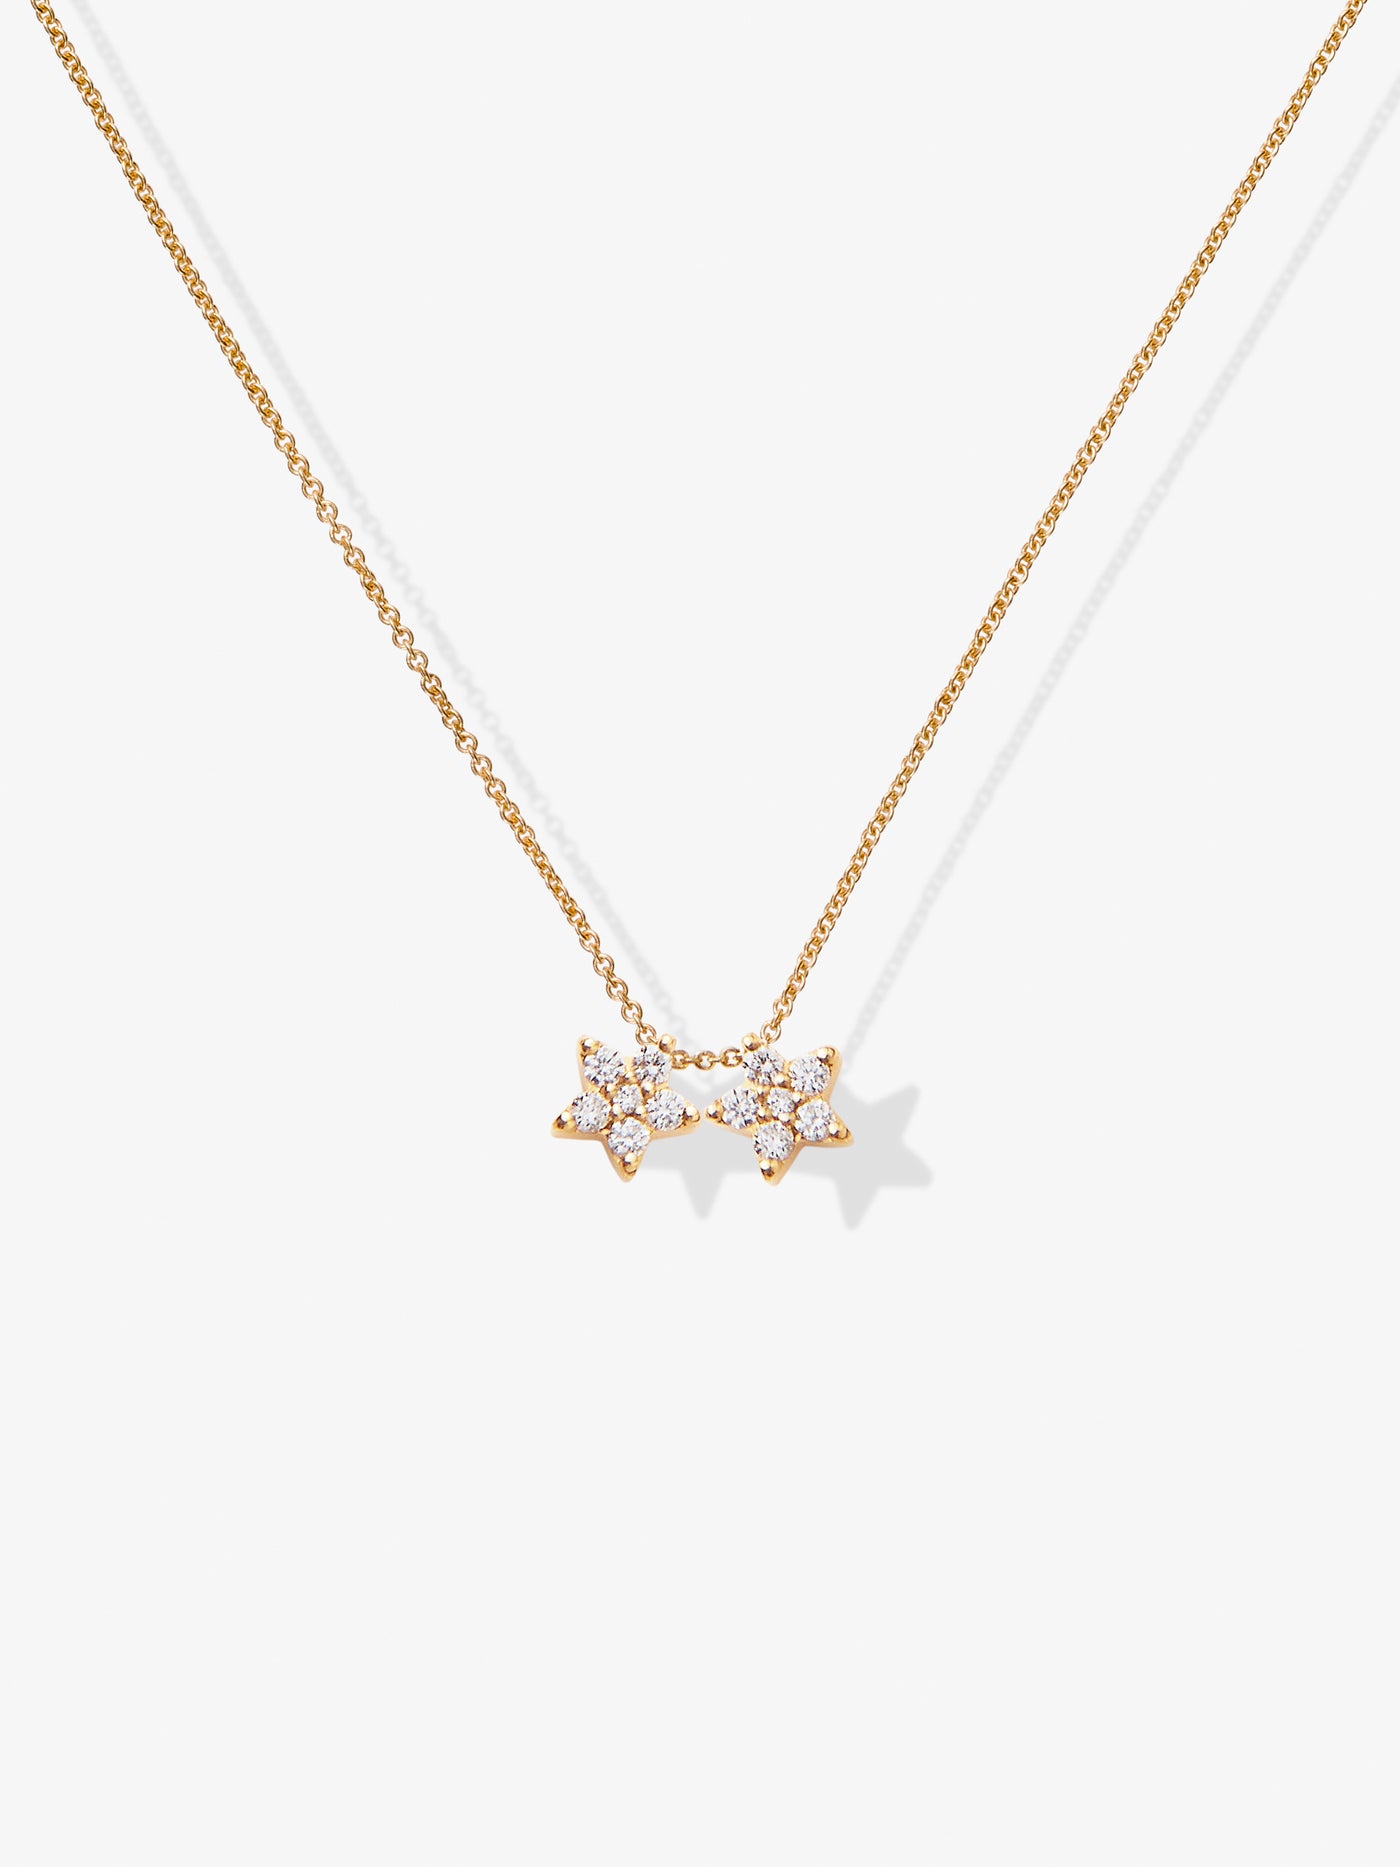 Diamond Stars Necklace in 18k Gold